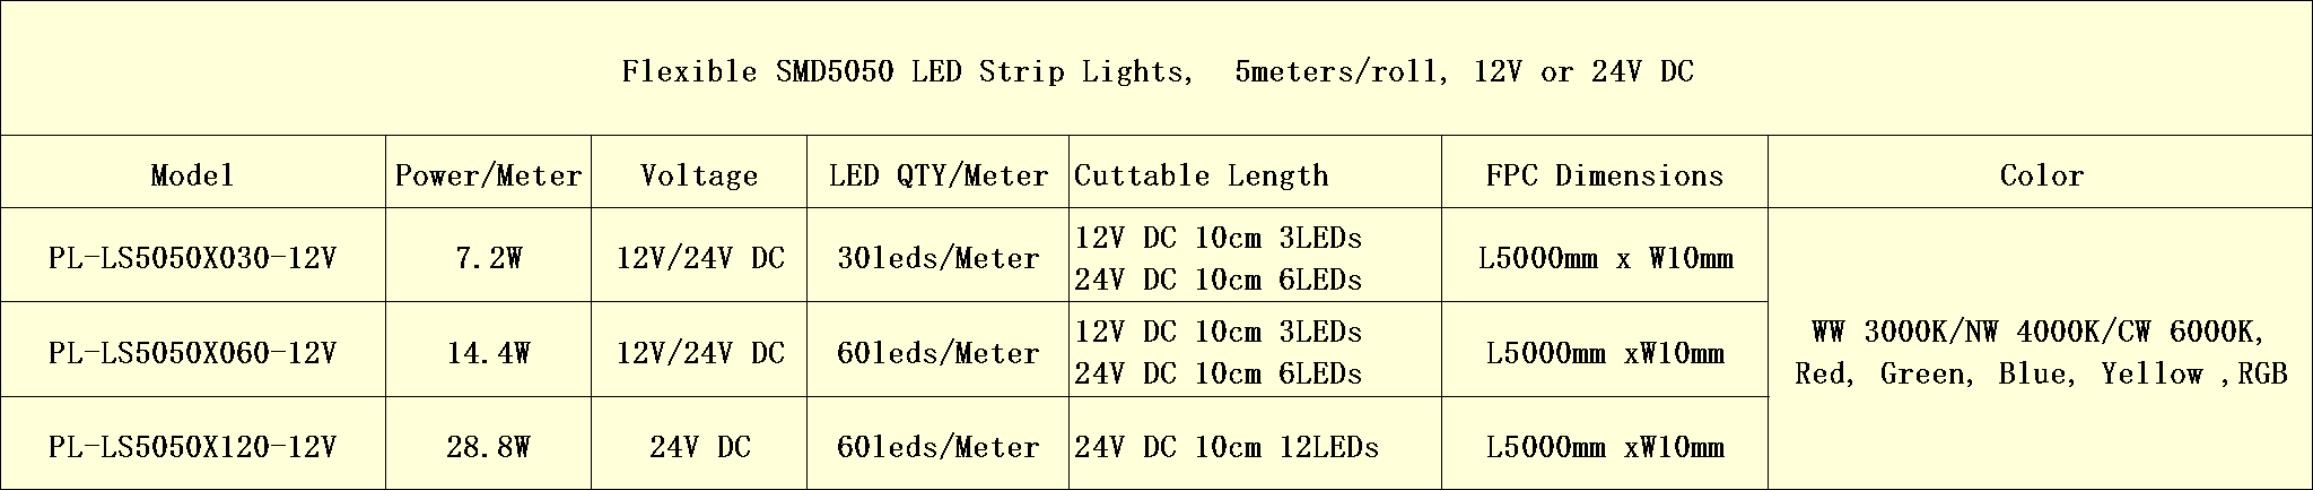 flexible smd5050 led strip lights